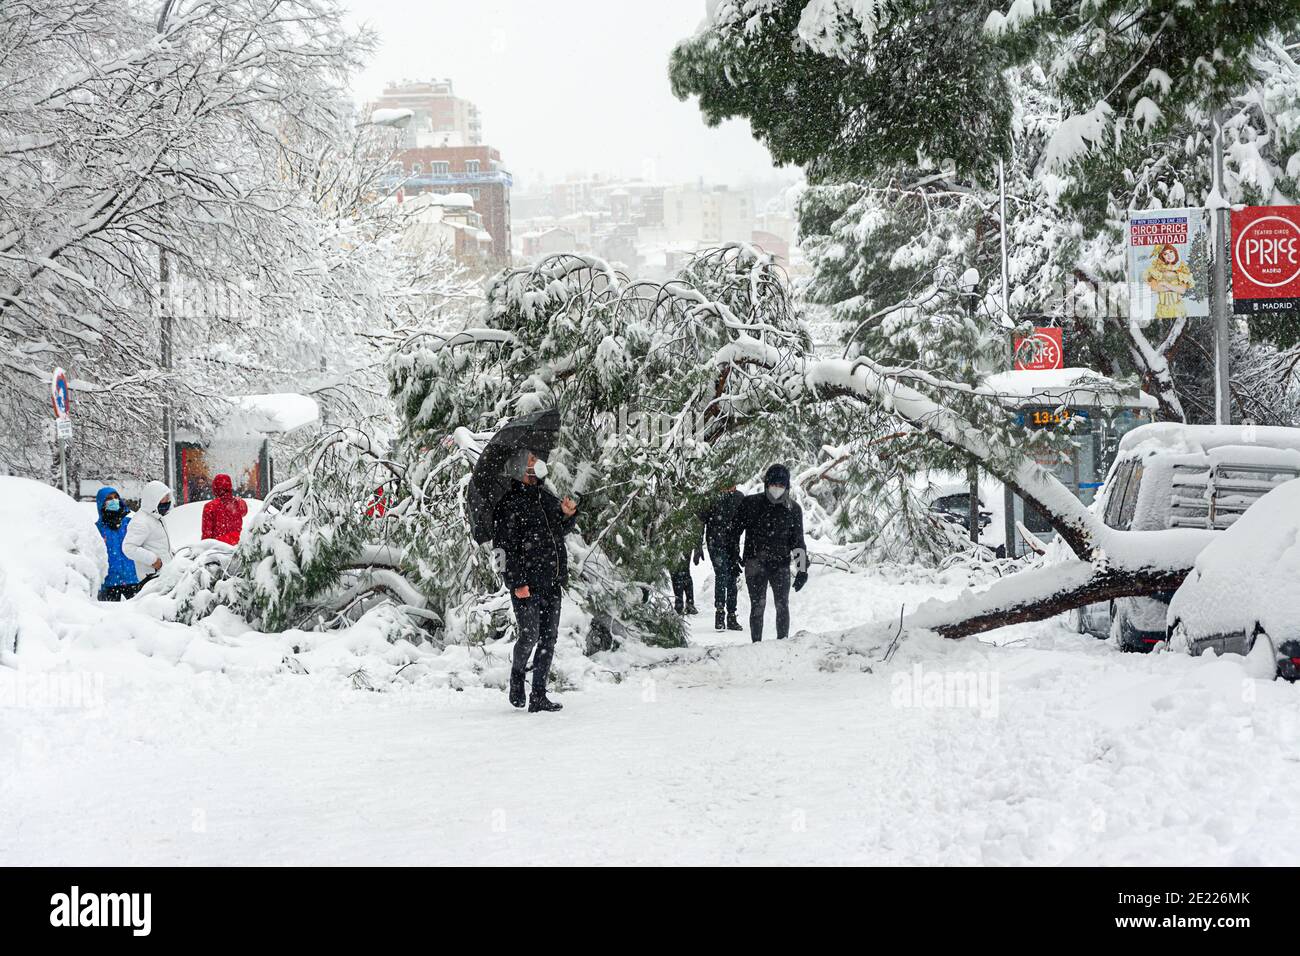 Madrid, Espagne, 01.09.2021, rue enneigée Segovia, arbre tombant dans le centre de Madrid, il neige, la tempête Filomena Banque D'Images